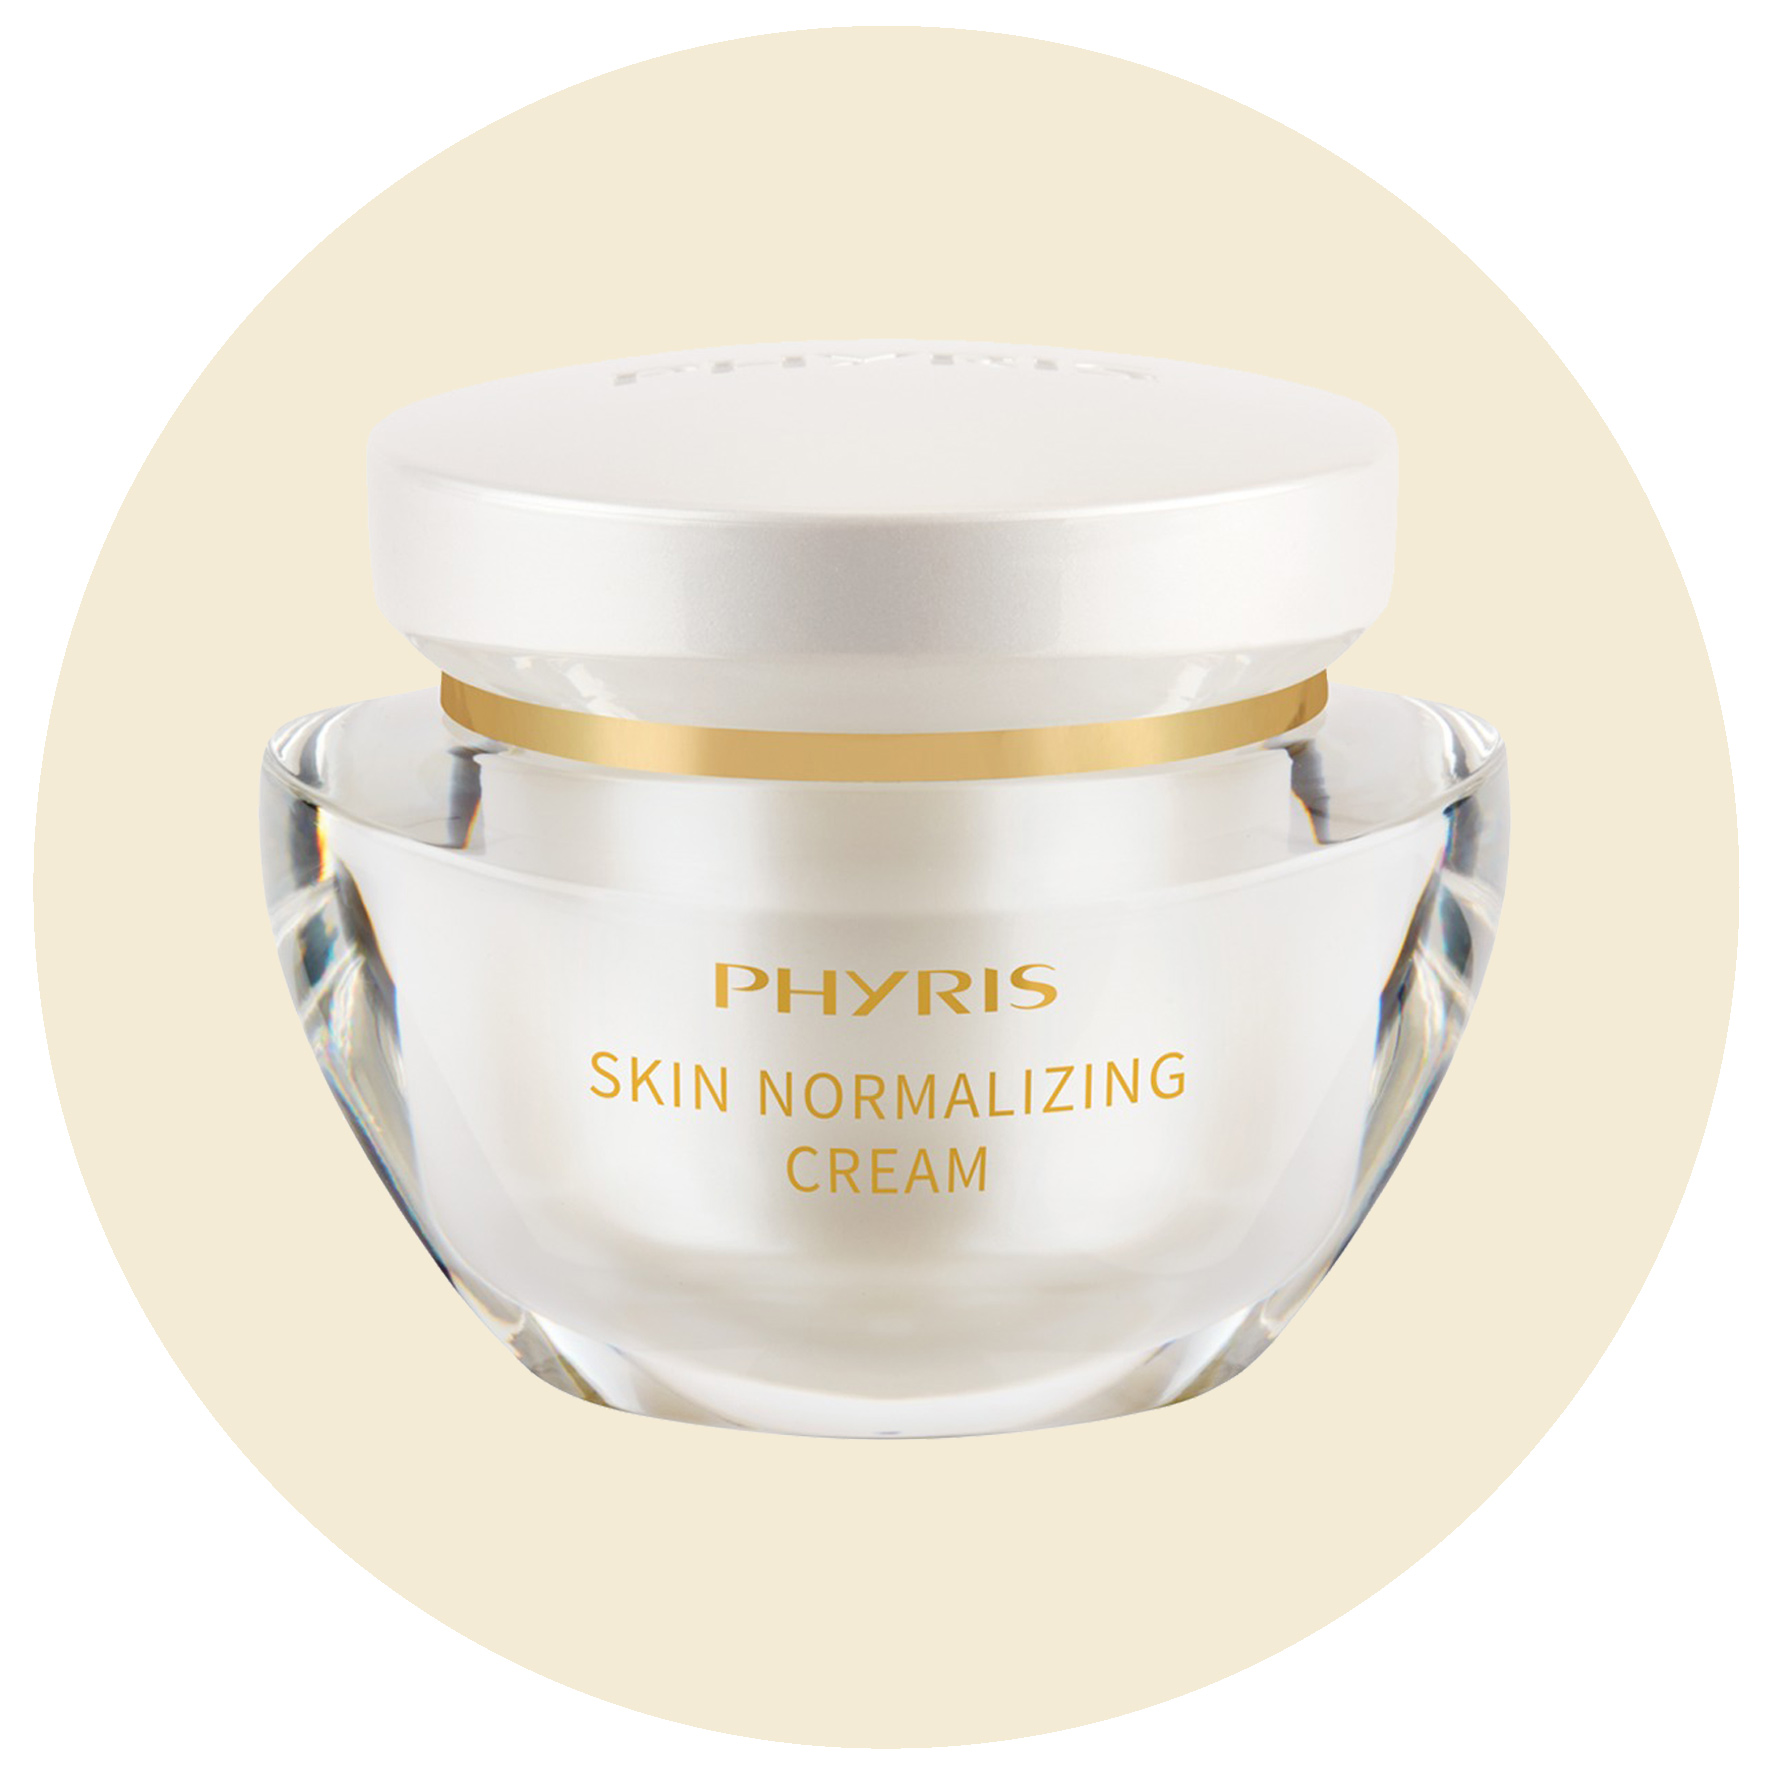 Phyris Skin Normalizing Cream